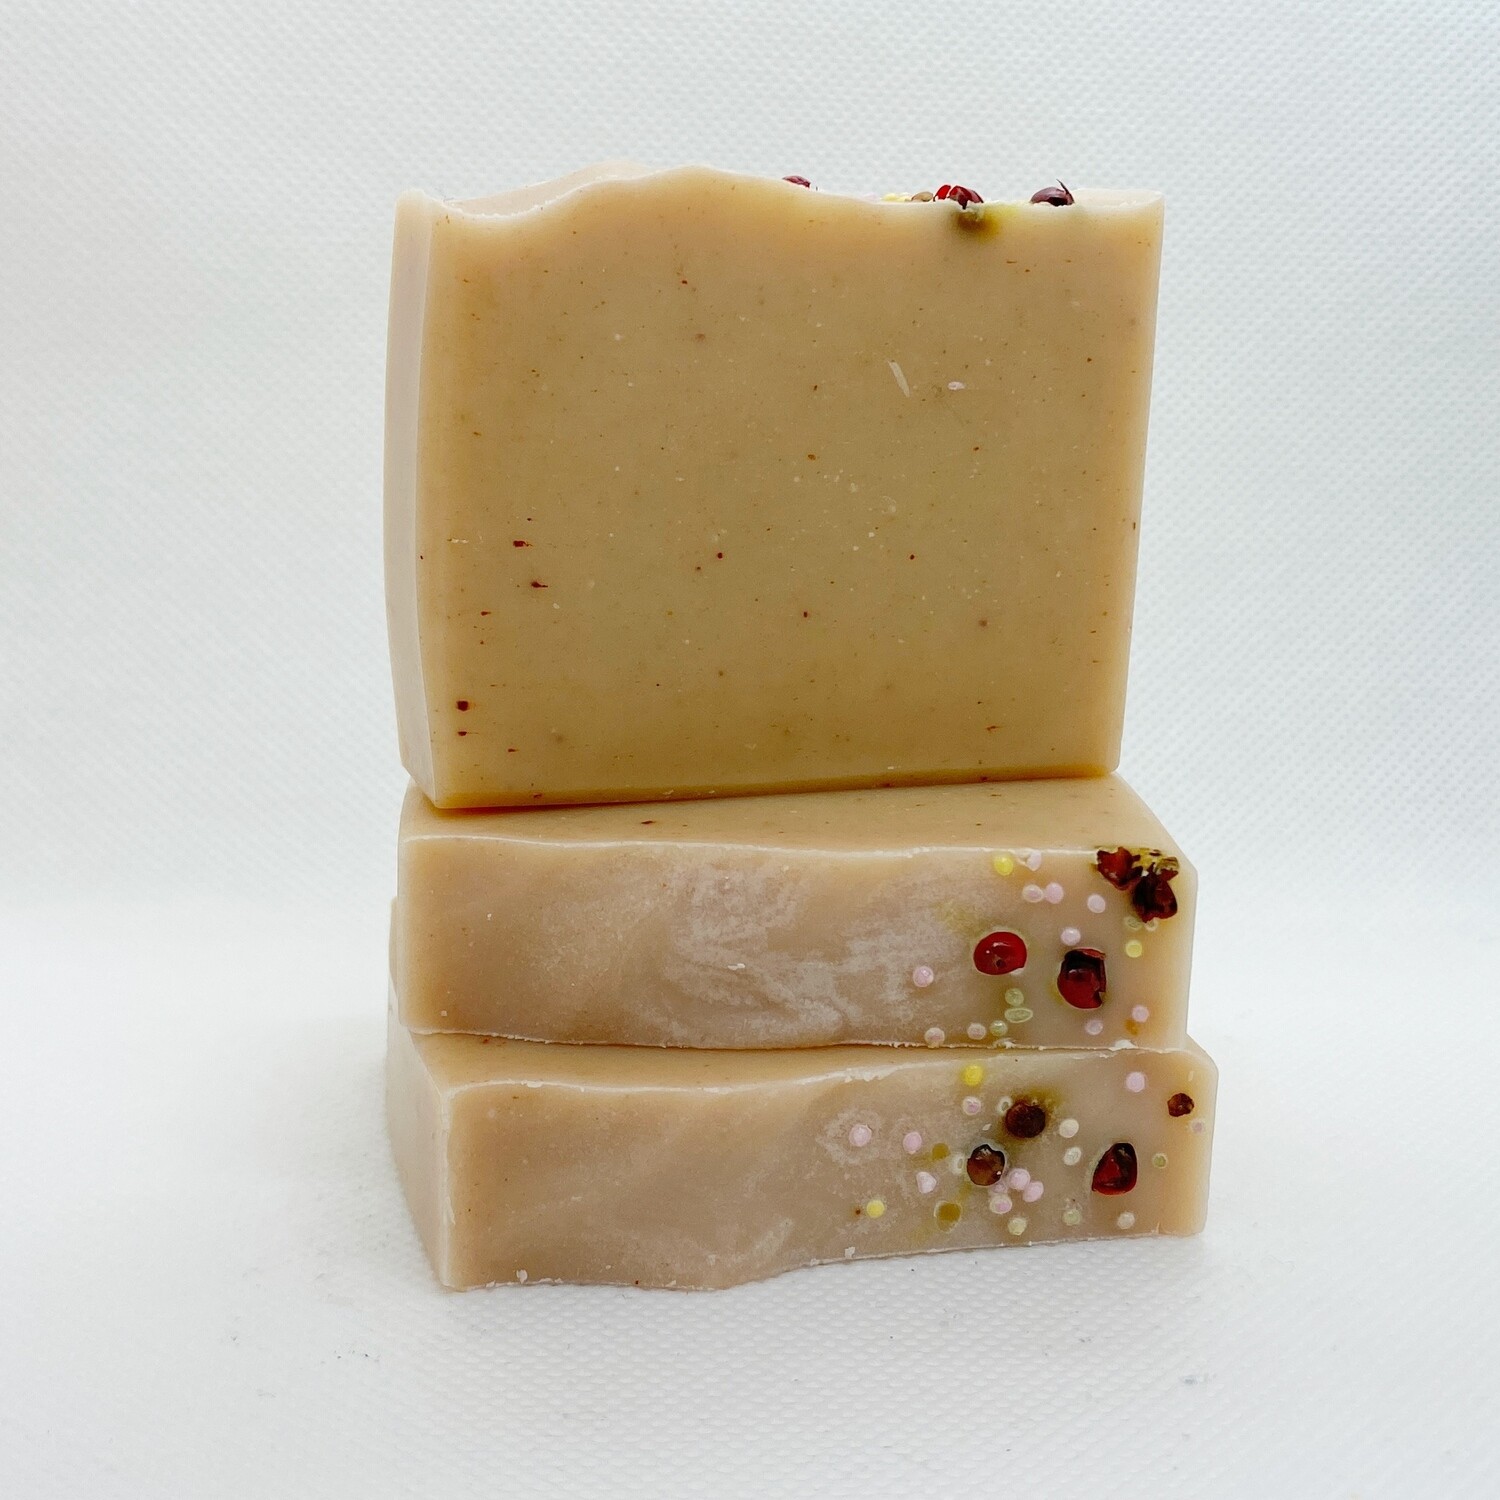 Andlit - turra húð (Face soap for dry skin)